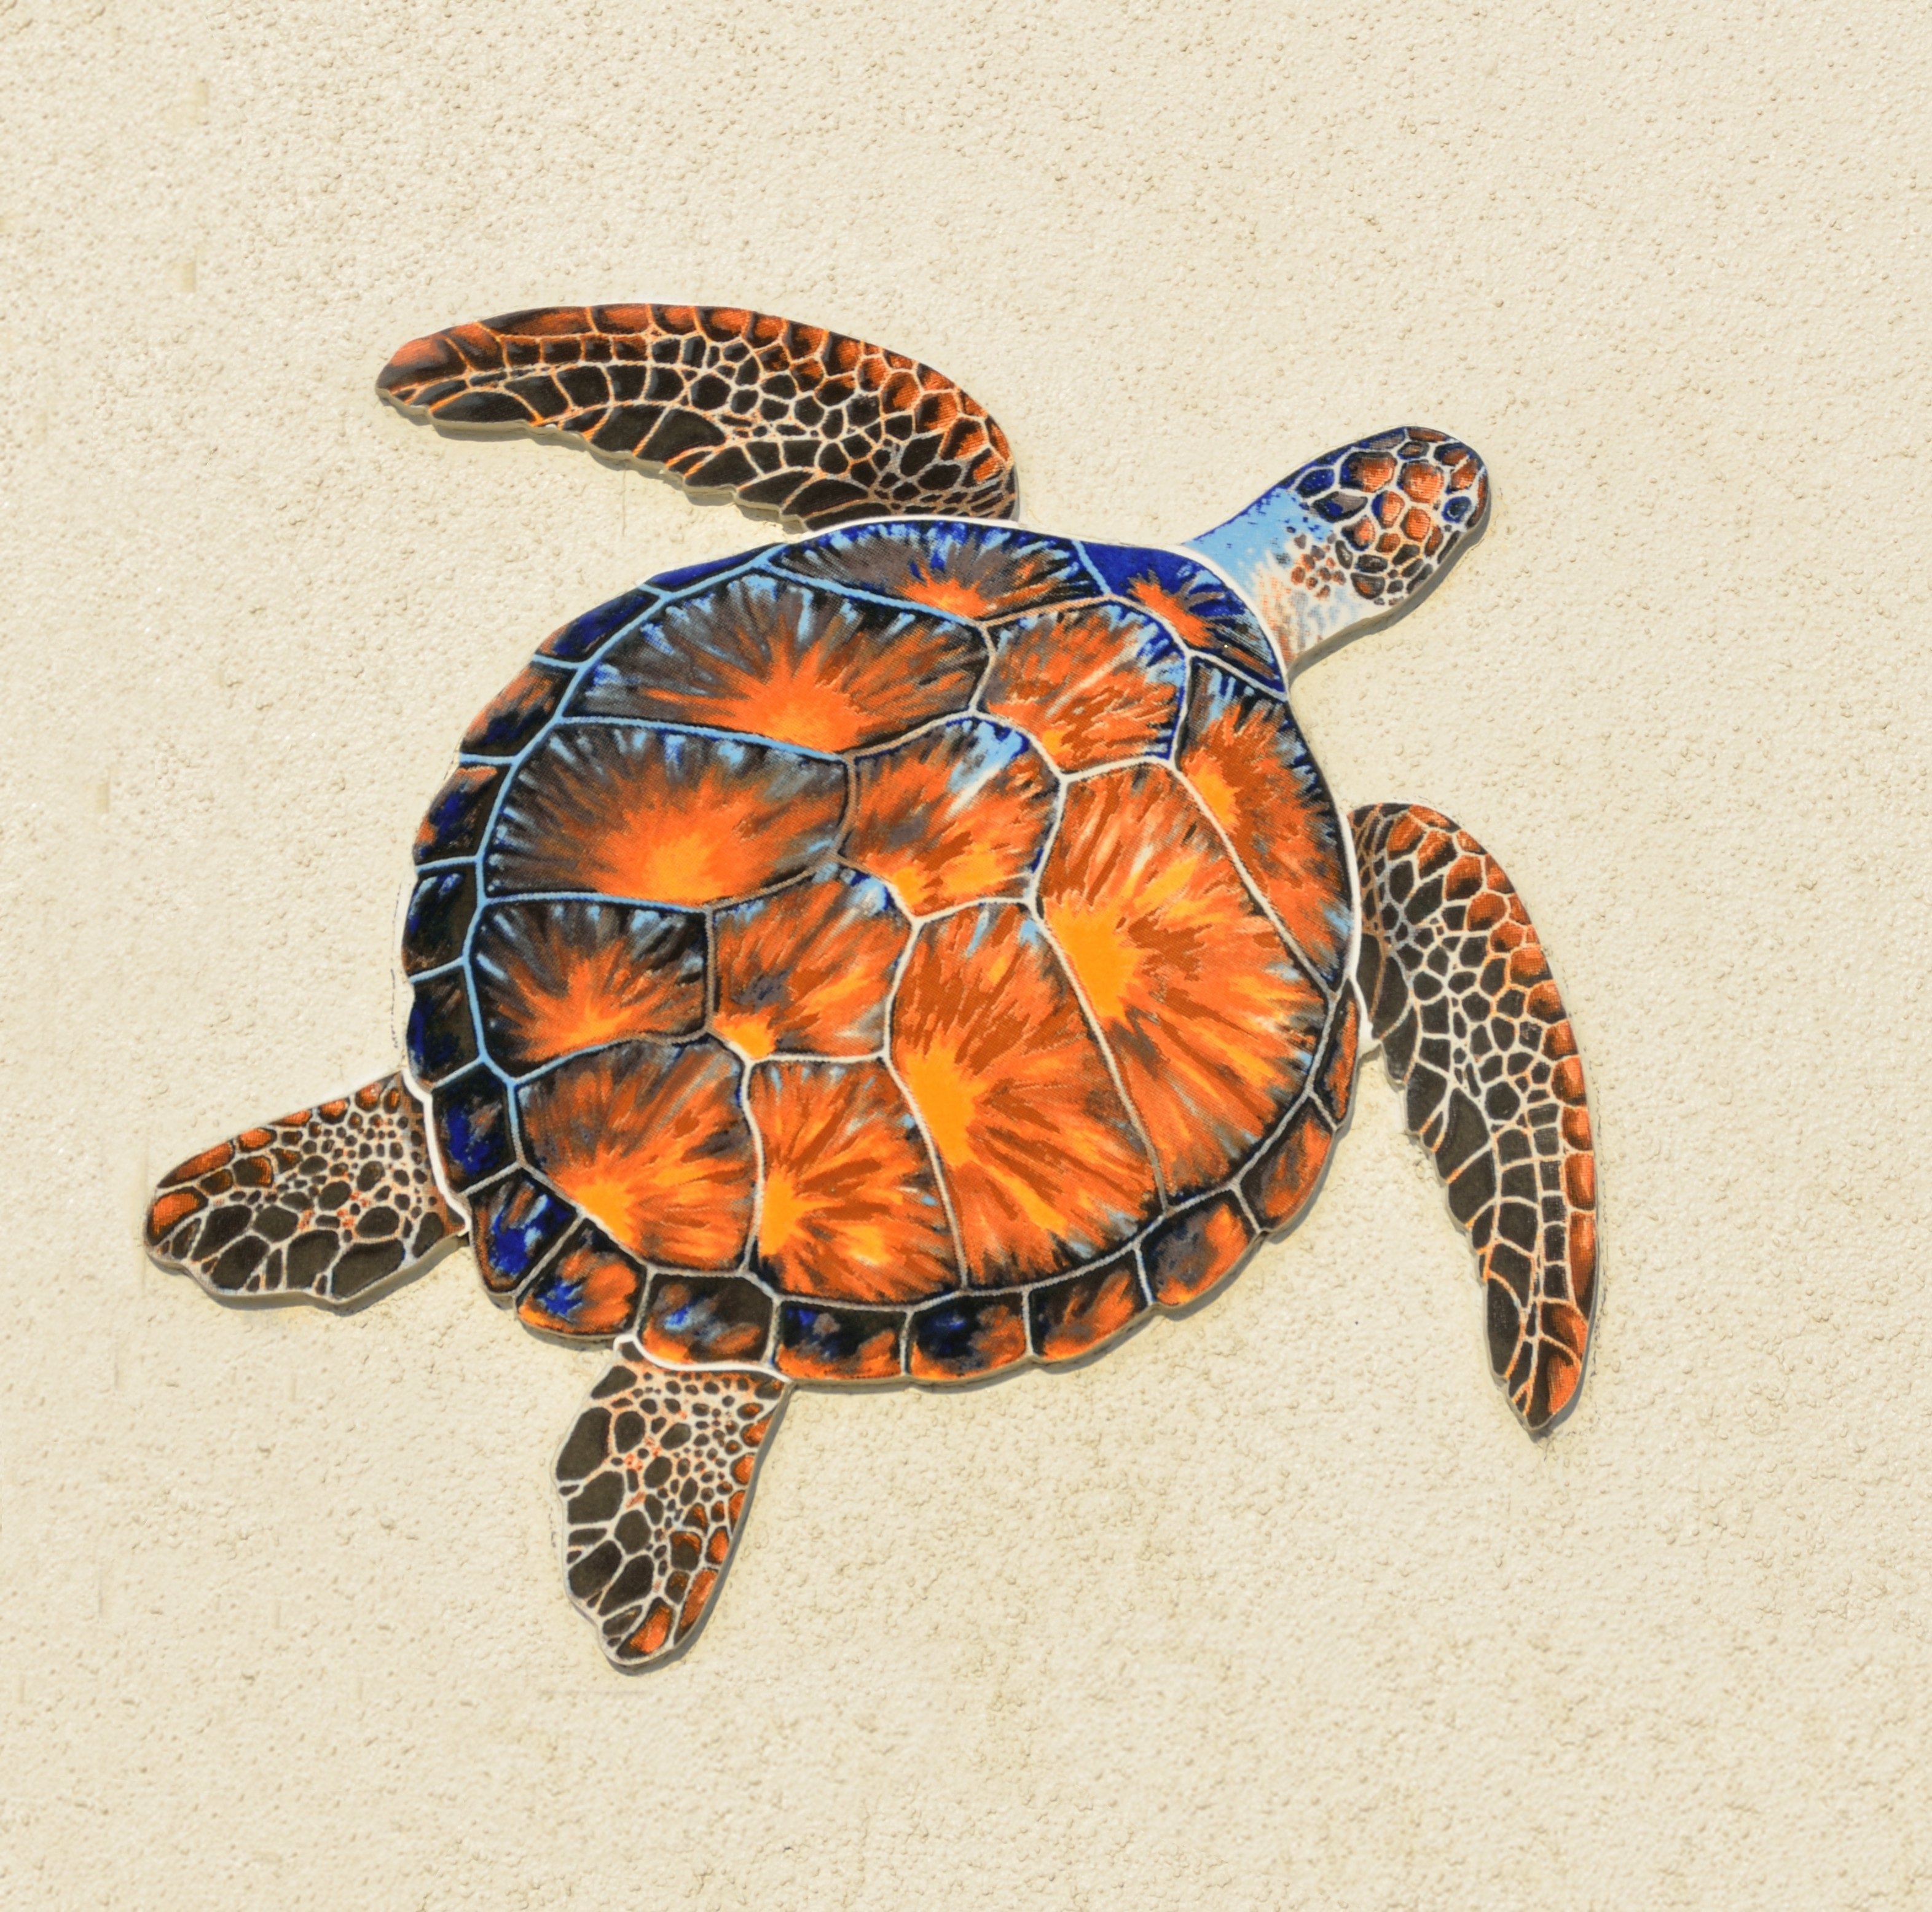 Симметрия черепахи. Панцирь морской черепахи. Западная Расписная черепаха. Морская черепаха узор на панцире.